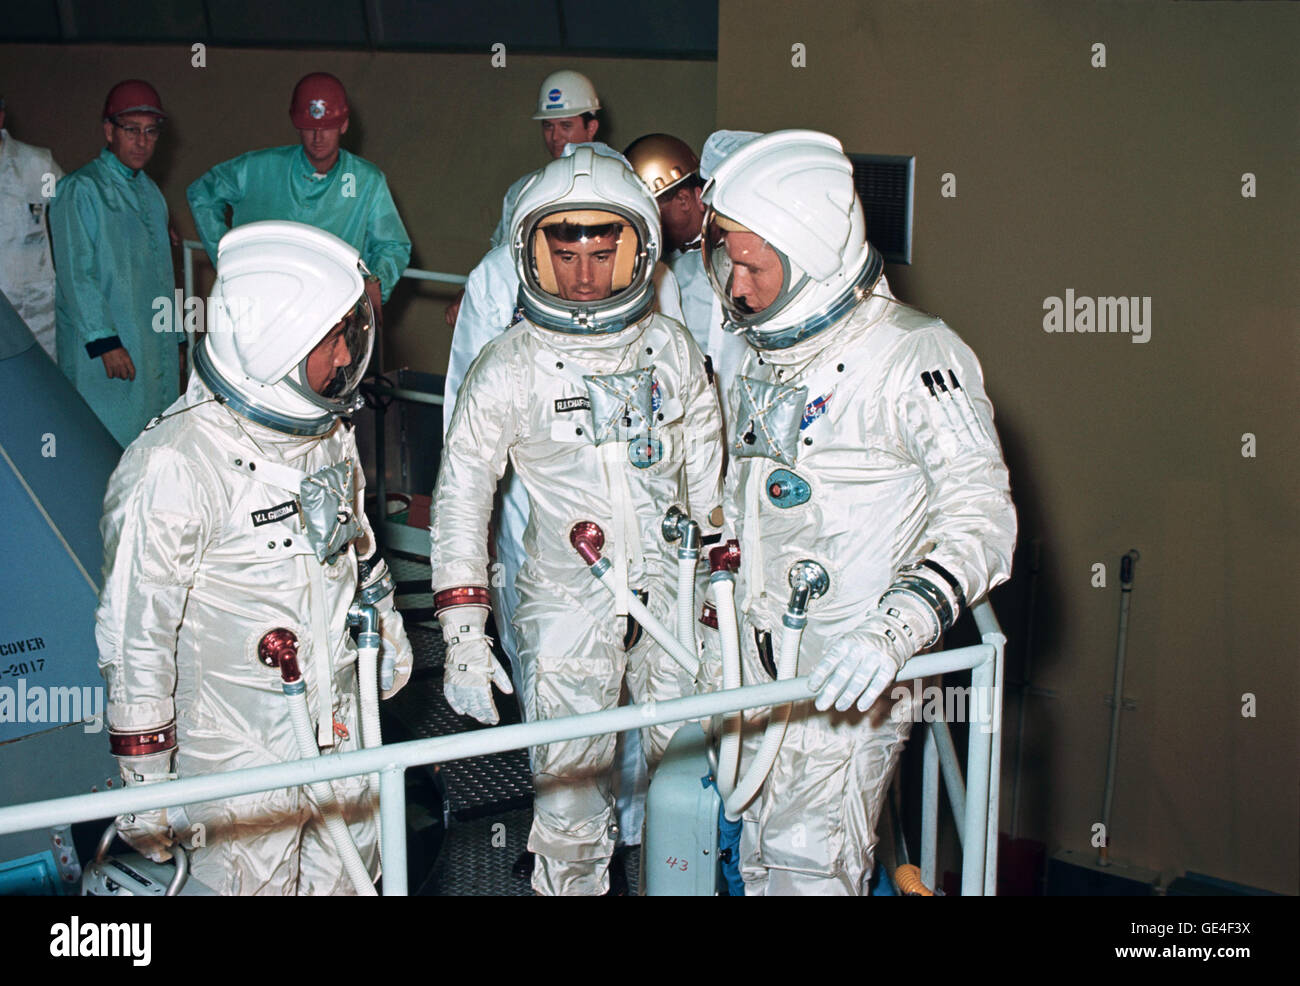 I tre membri di equipaggio per la Apollo-Saturn 204 missione (in seguito denominata Apollo 1) Check out lettino installazione su Apollo modulo di comando (CM) a nord americano è Downey facility. Da sinistra a destra nel loro spazio pressurizzato tute sono gli astronauti Virgil I. Grissom, Roger B. Chaffee e Edward H. White II. Immagine # : S66-49181 Data: 22 Agosto 1966 Foto Stock